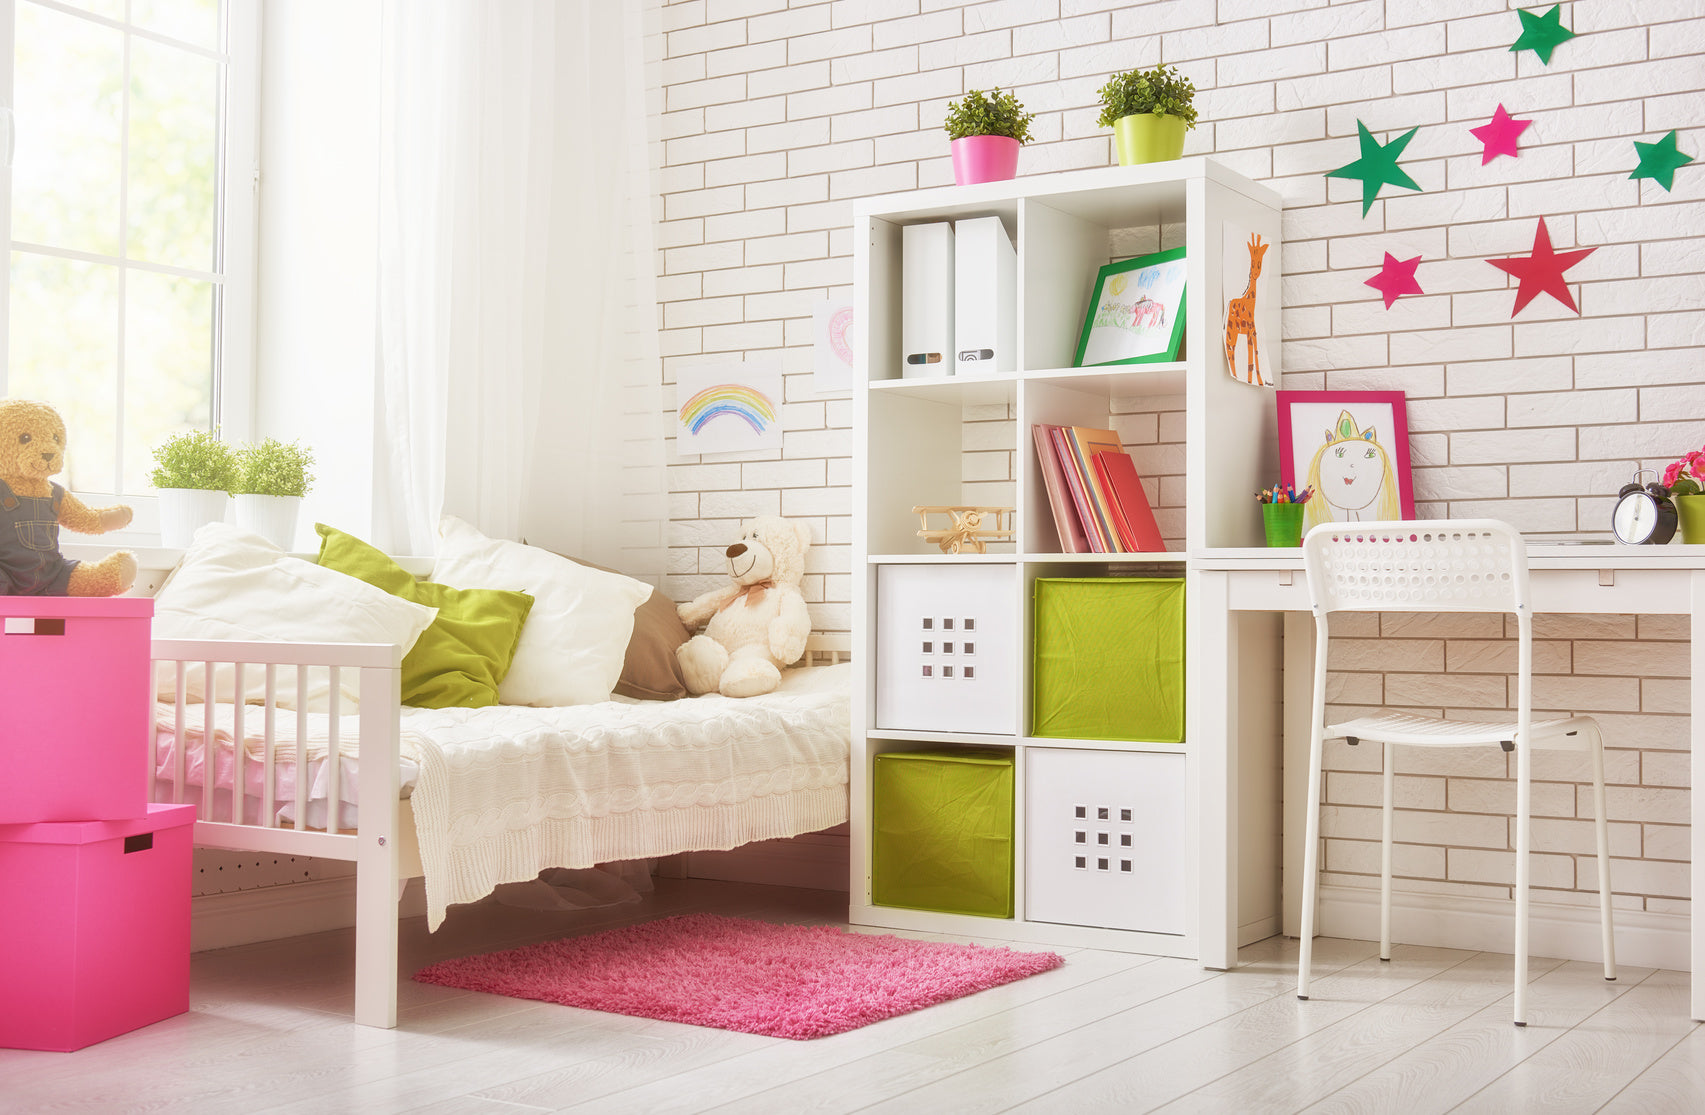 Comment décorer la chambre de votre enfant ?